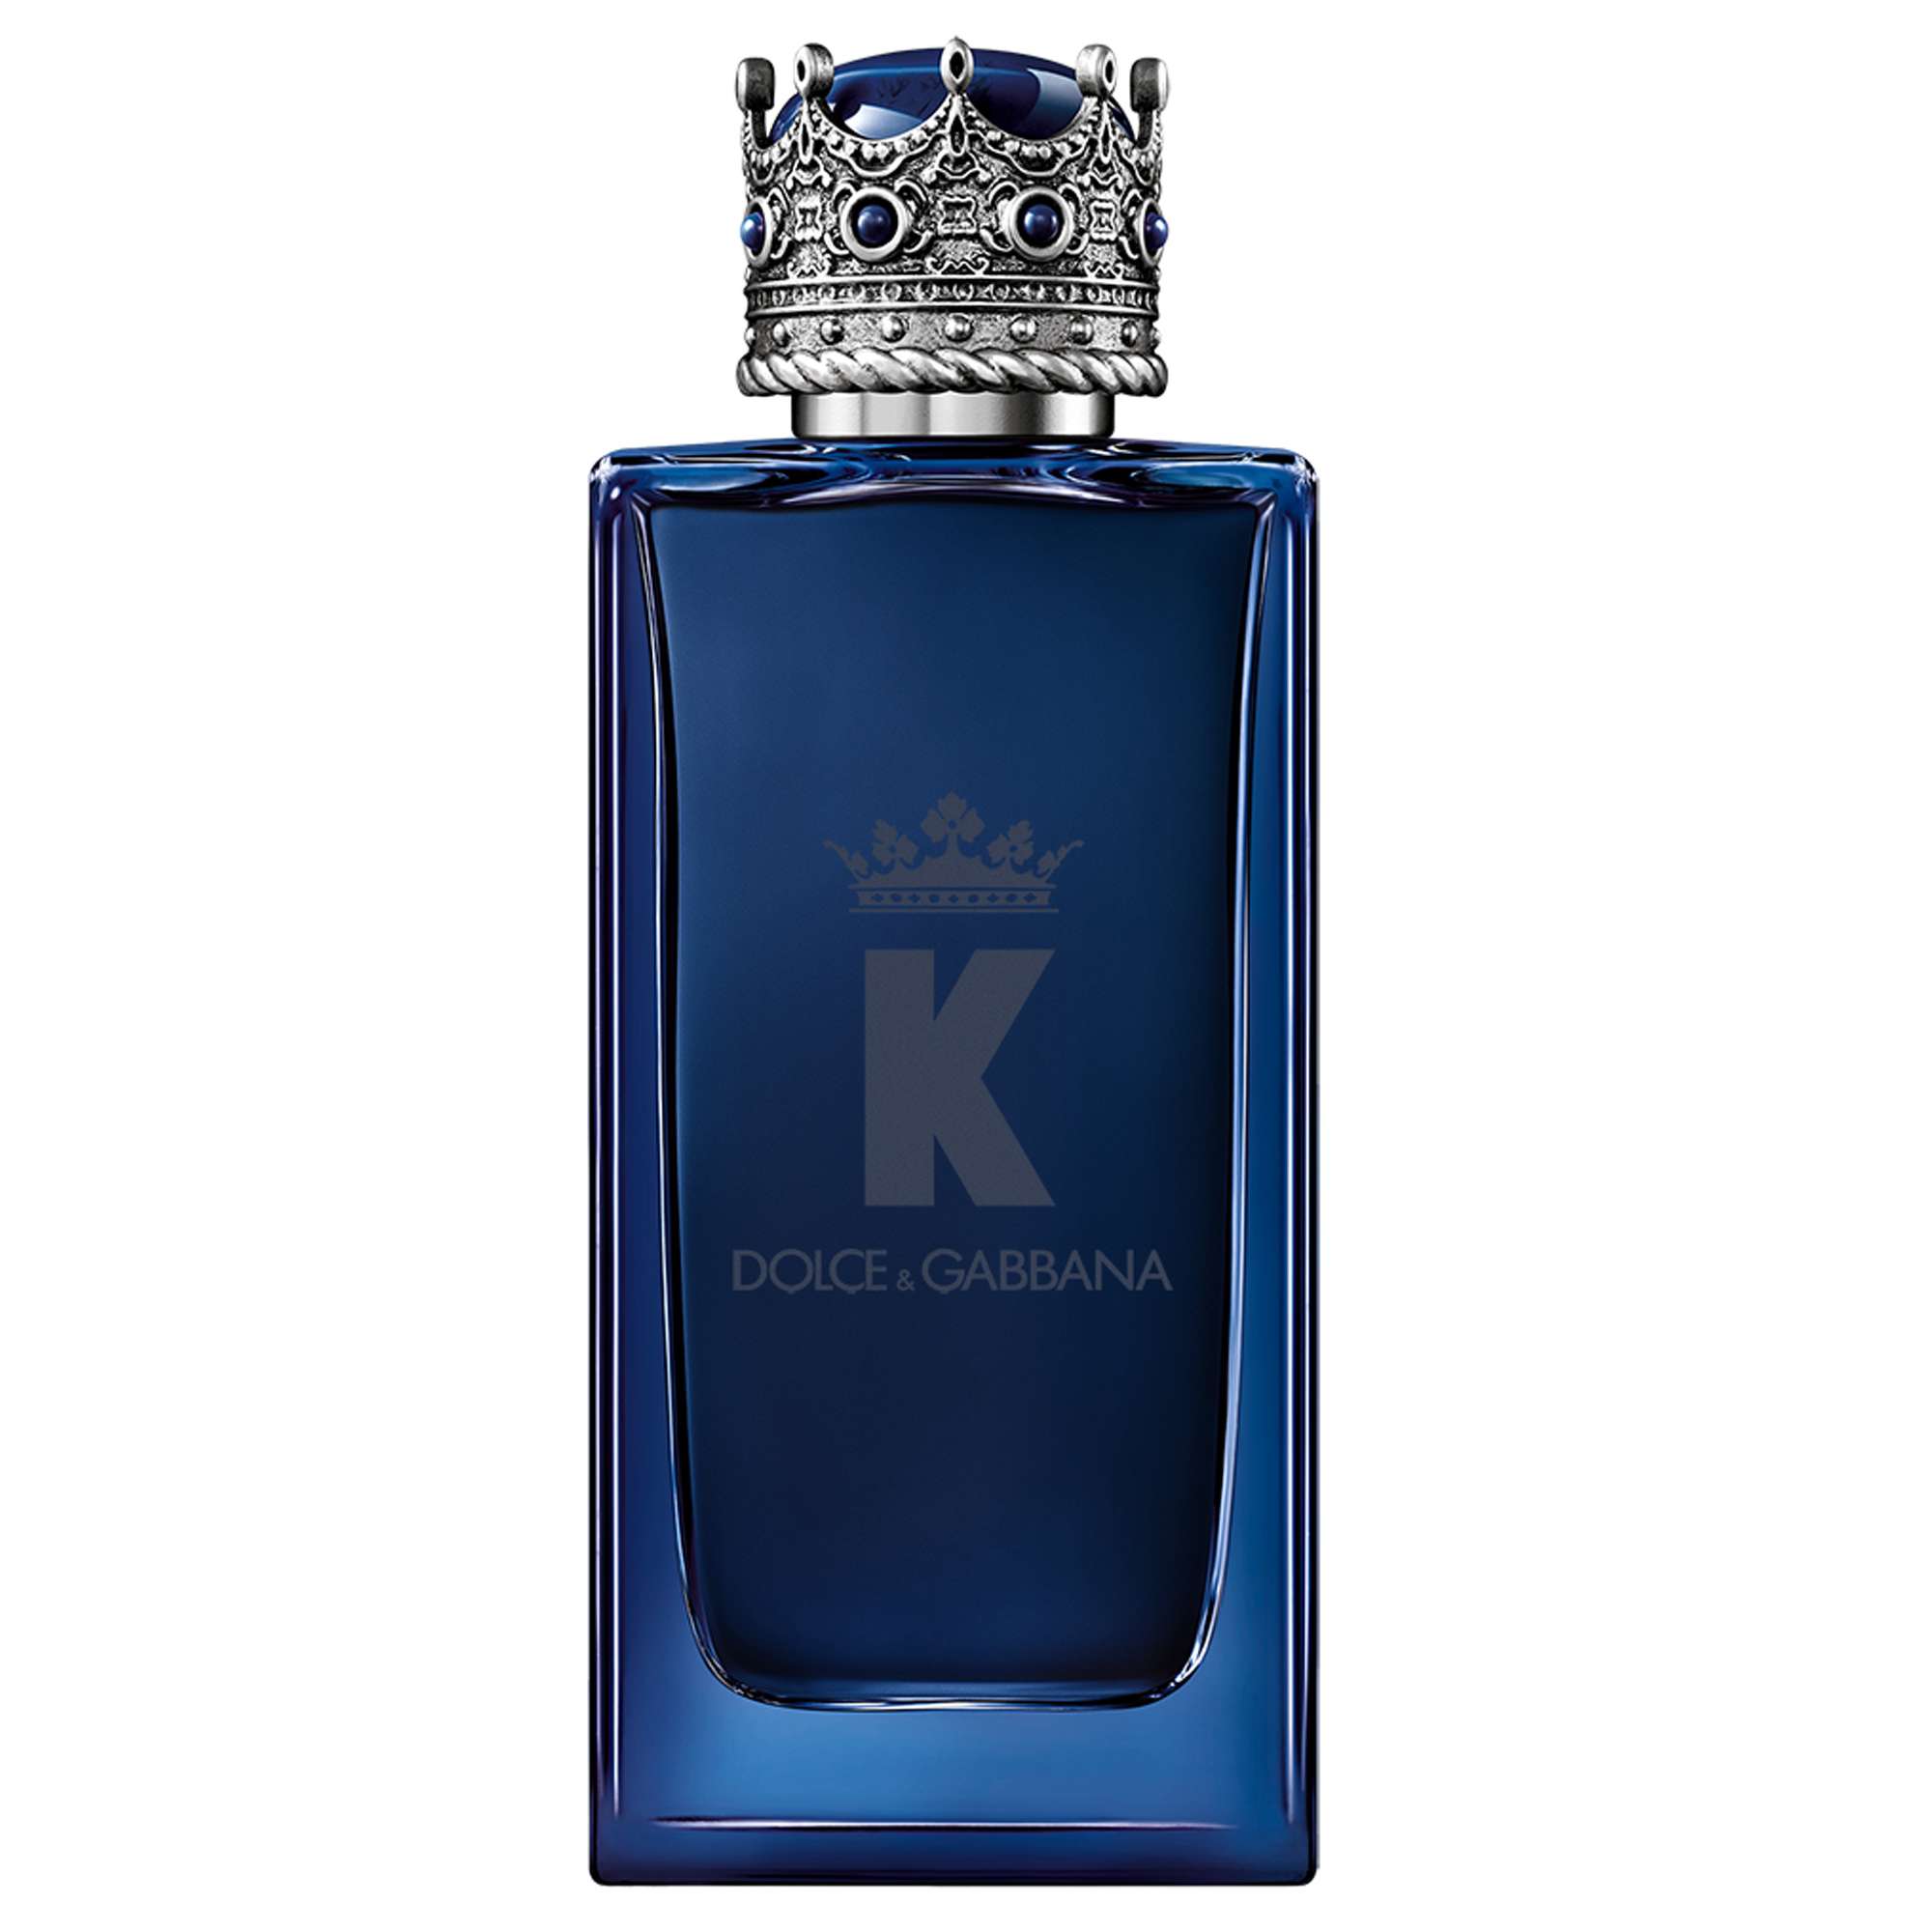 Dolce&Gabbana K Eau de Parfum Intense Spray 100ml